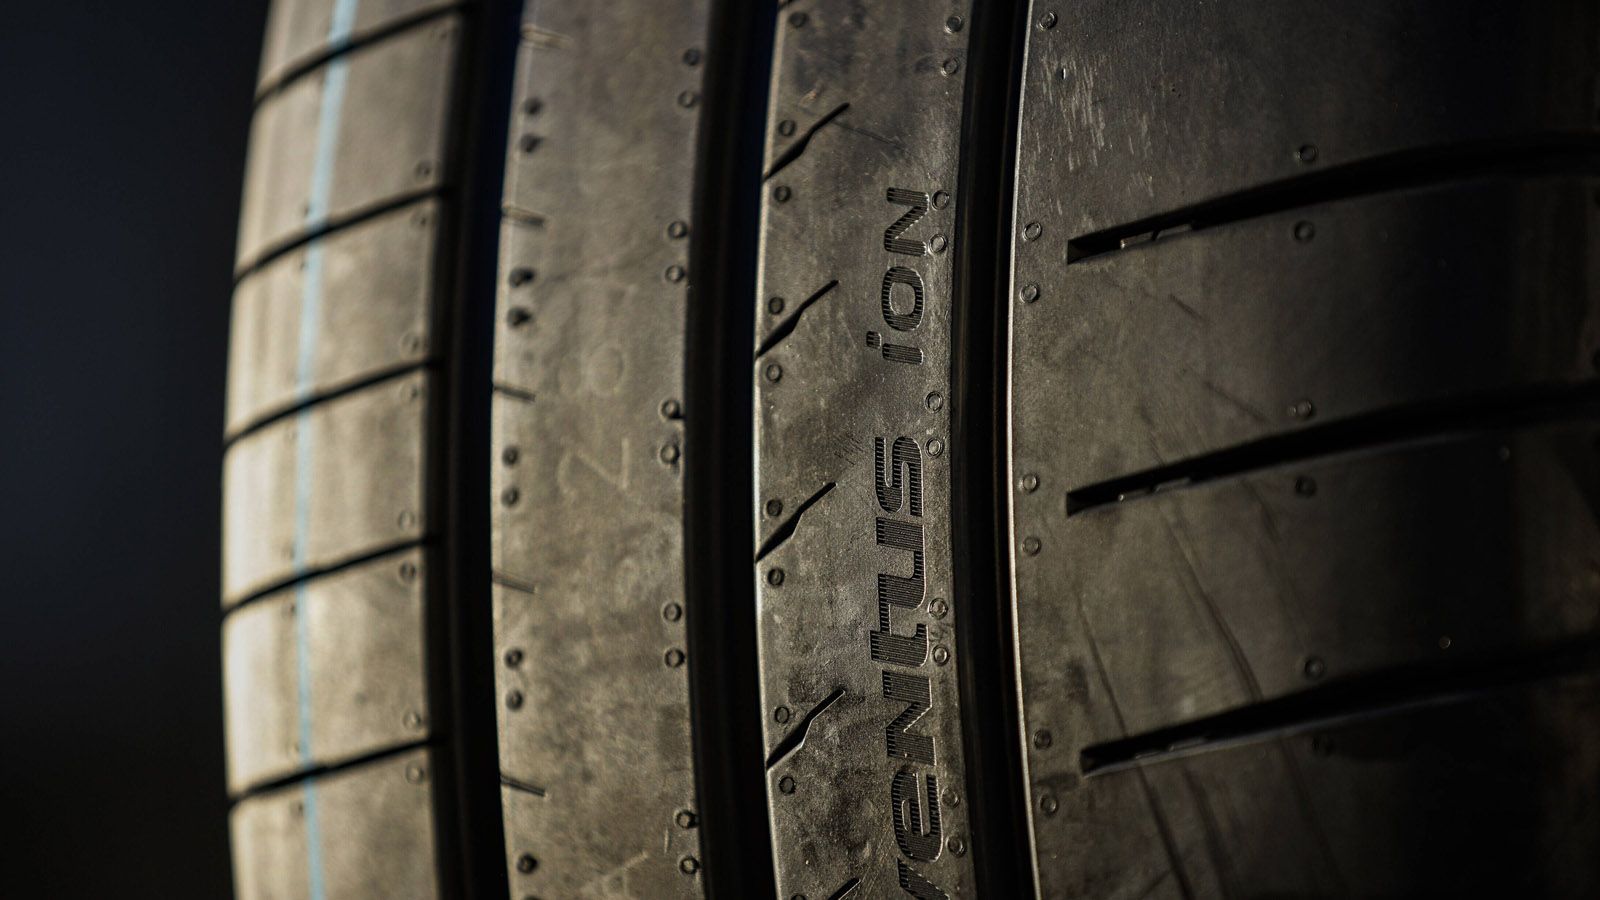 
                <strong>Die Reifen</strong><br>
                Sogar der Reifen ist neu. Denn nach acht Saisons auf Pneus von Michelin setzt die Formel E auf Reifen des südkoreanischen Herstellers Hankook. Gefahren wird jetzt mit dem Allwetterreifen Hankook iON Race.
              